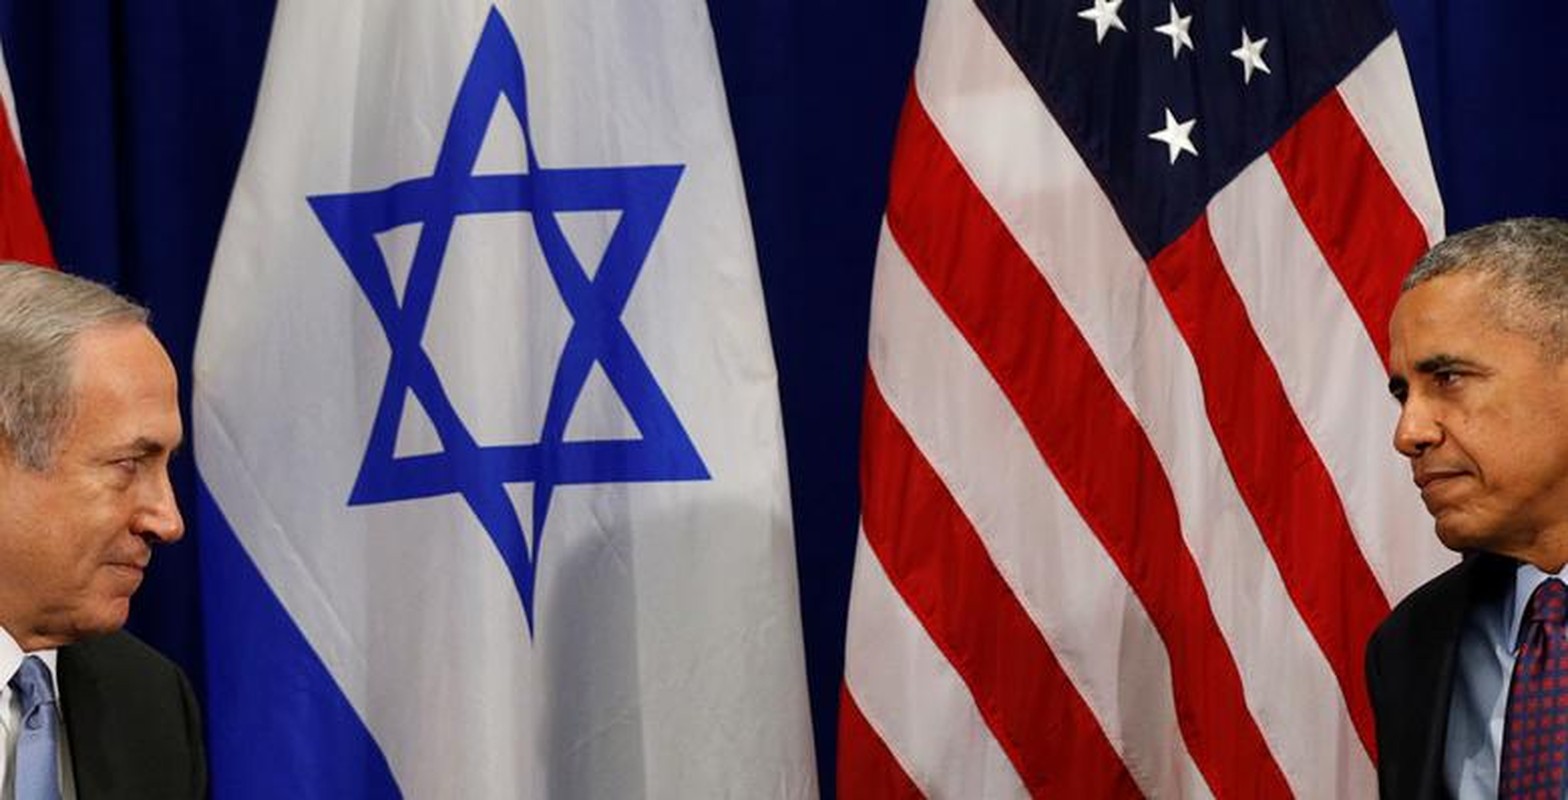 Loat hinh an tuong Thu tuong Israel Benjamin Netanyahu trong thoi gian cam quyen-Hinh-5